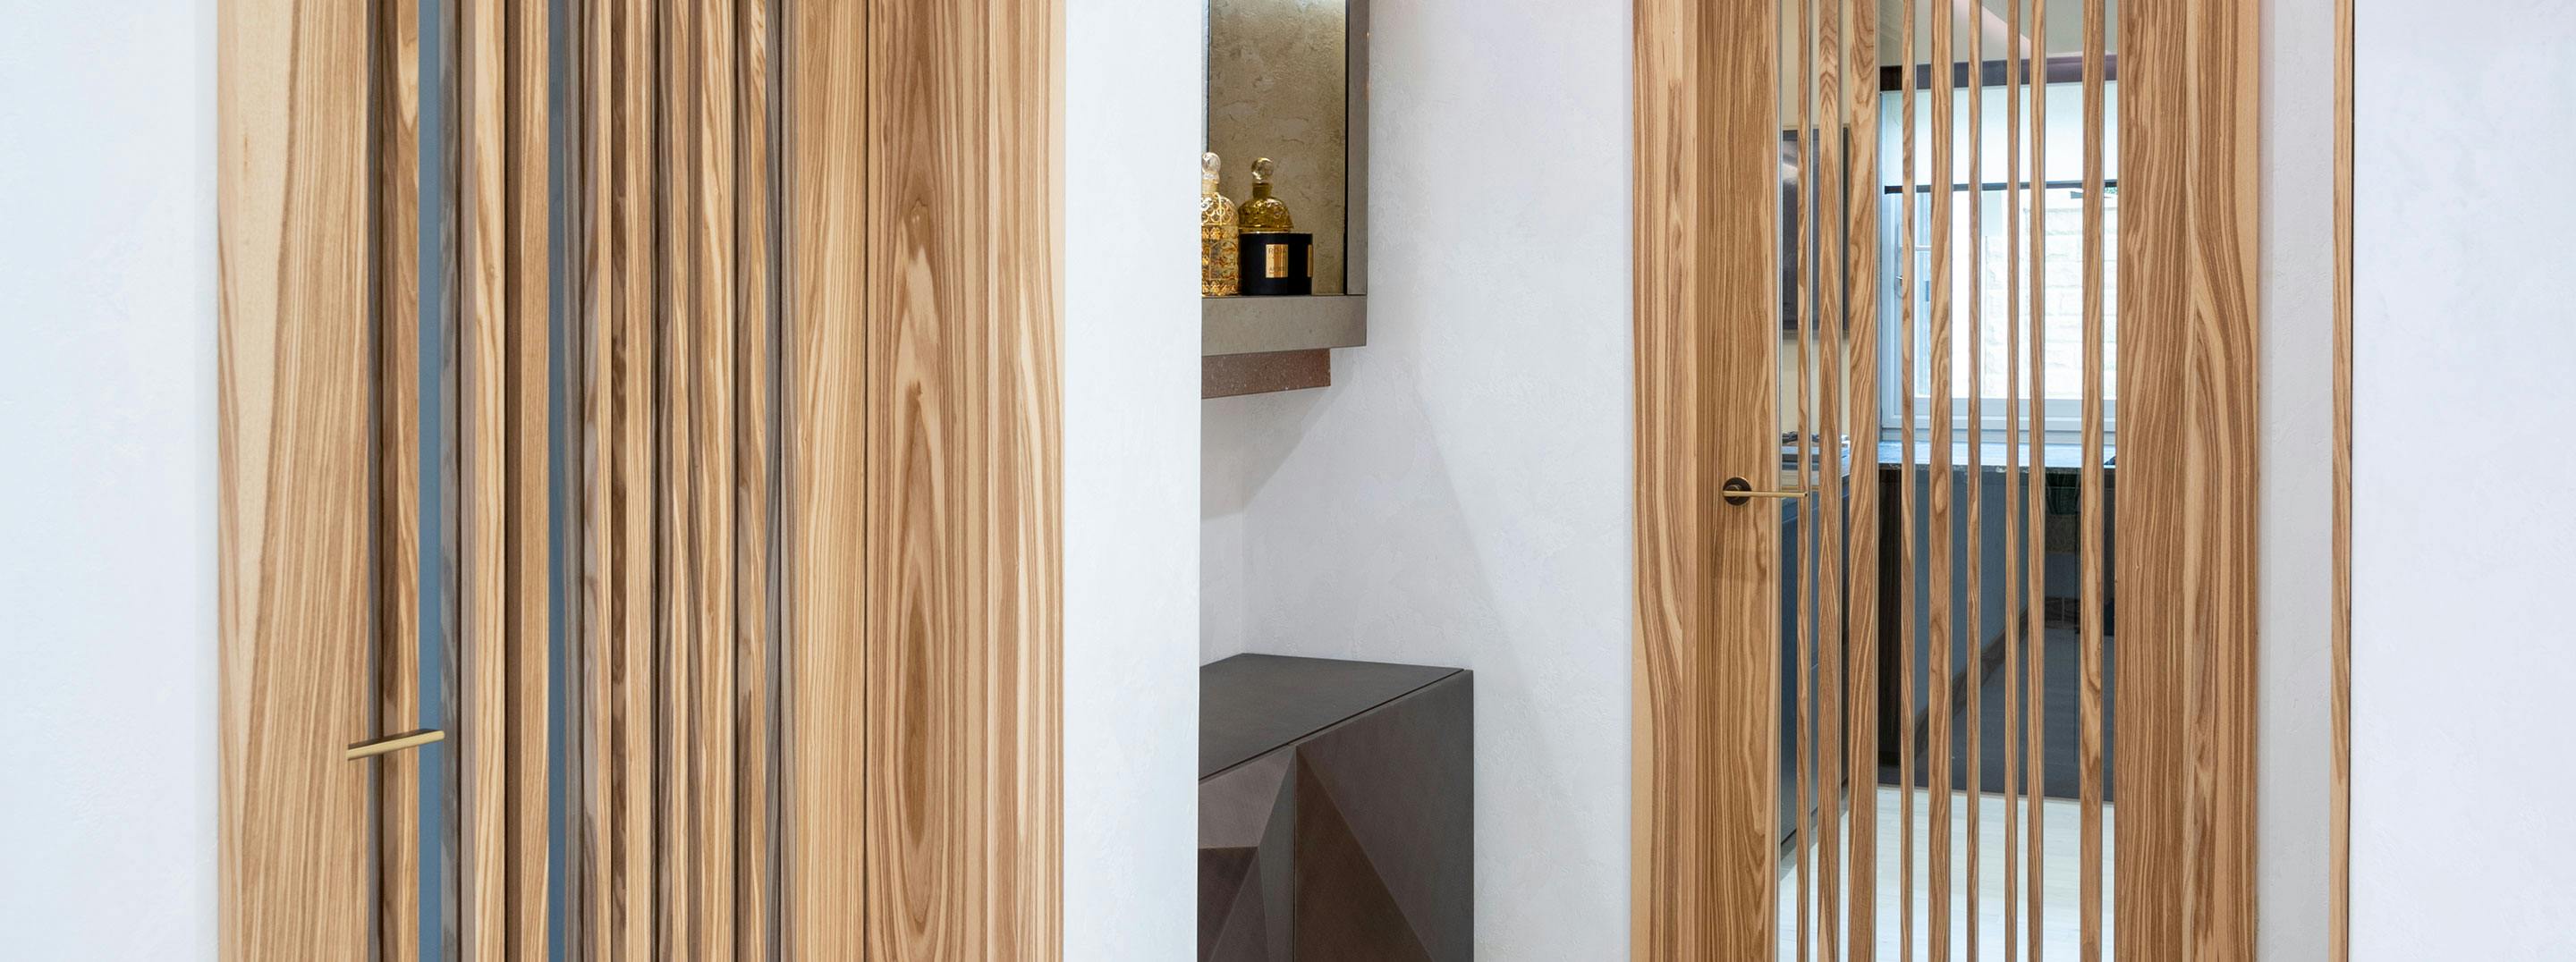 Bespoke Deuren Gio glass doors with irregular vertical timber strips, in olive oak.